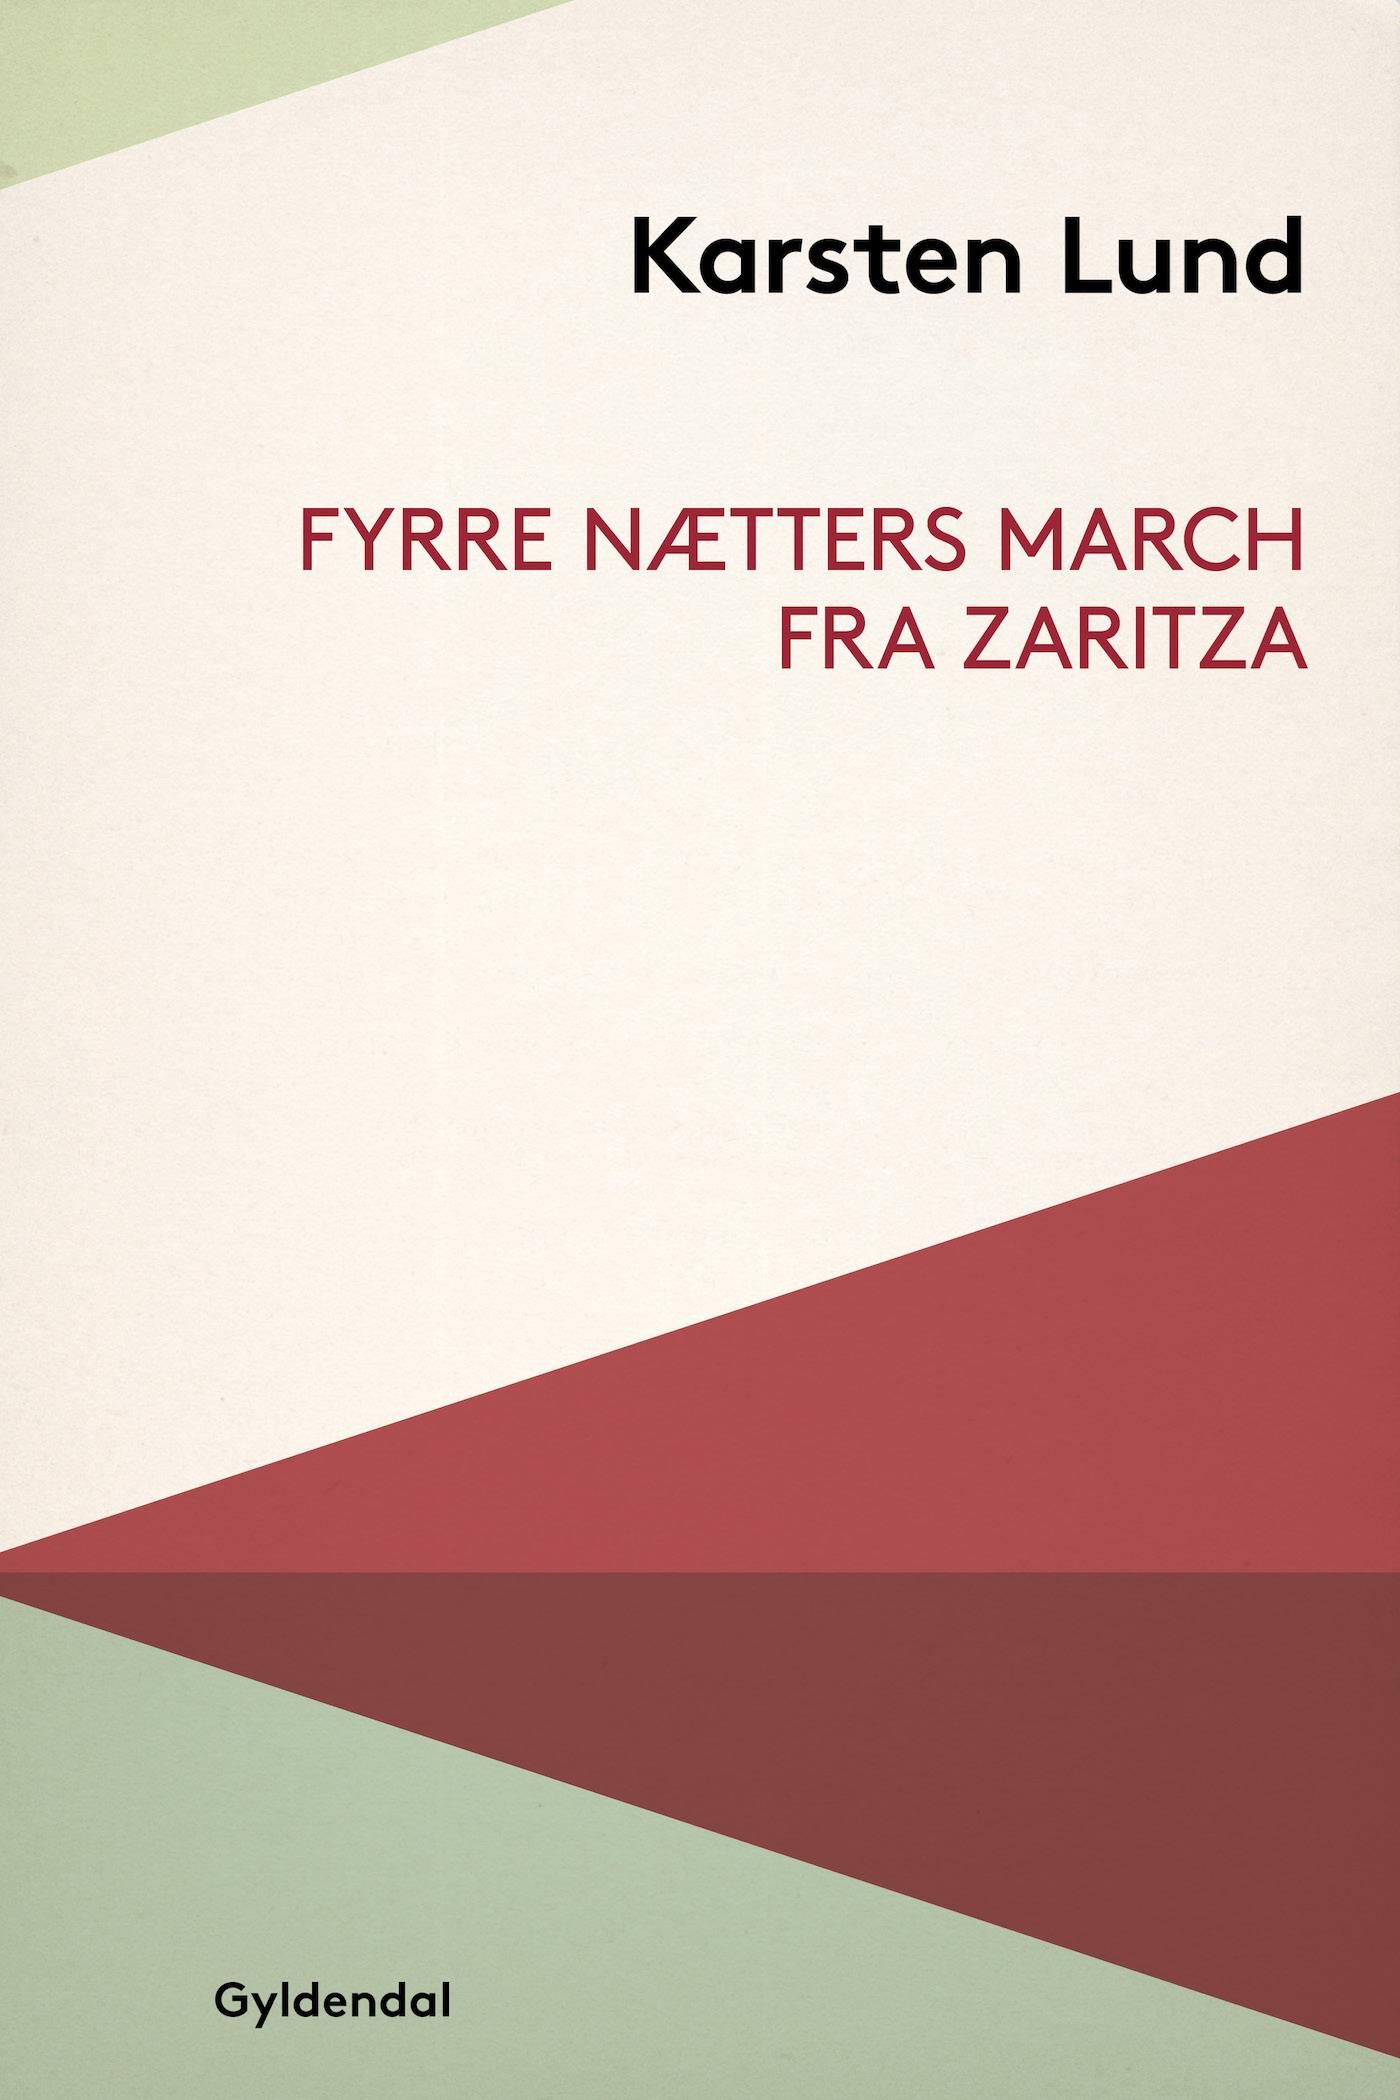 Fyrre nætters march fra Zaritza, e-bok av Karsten Lund